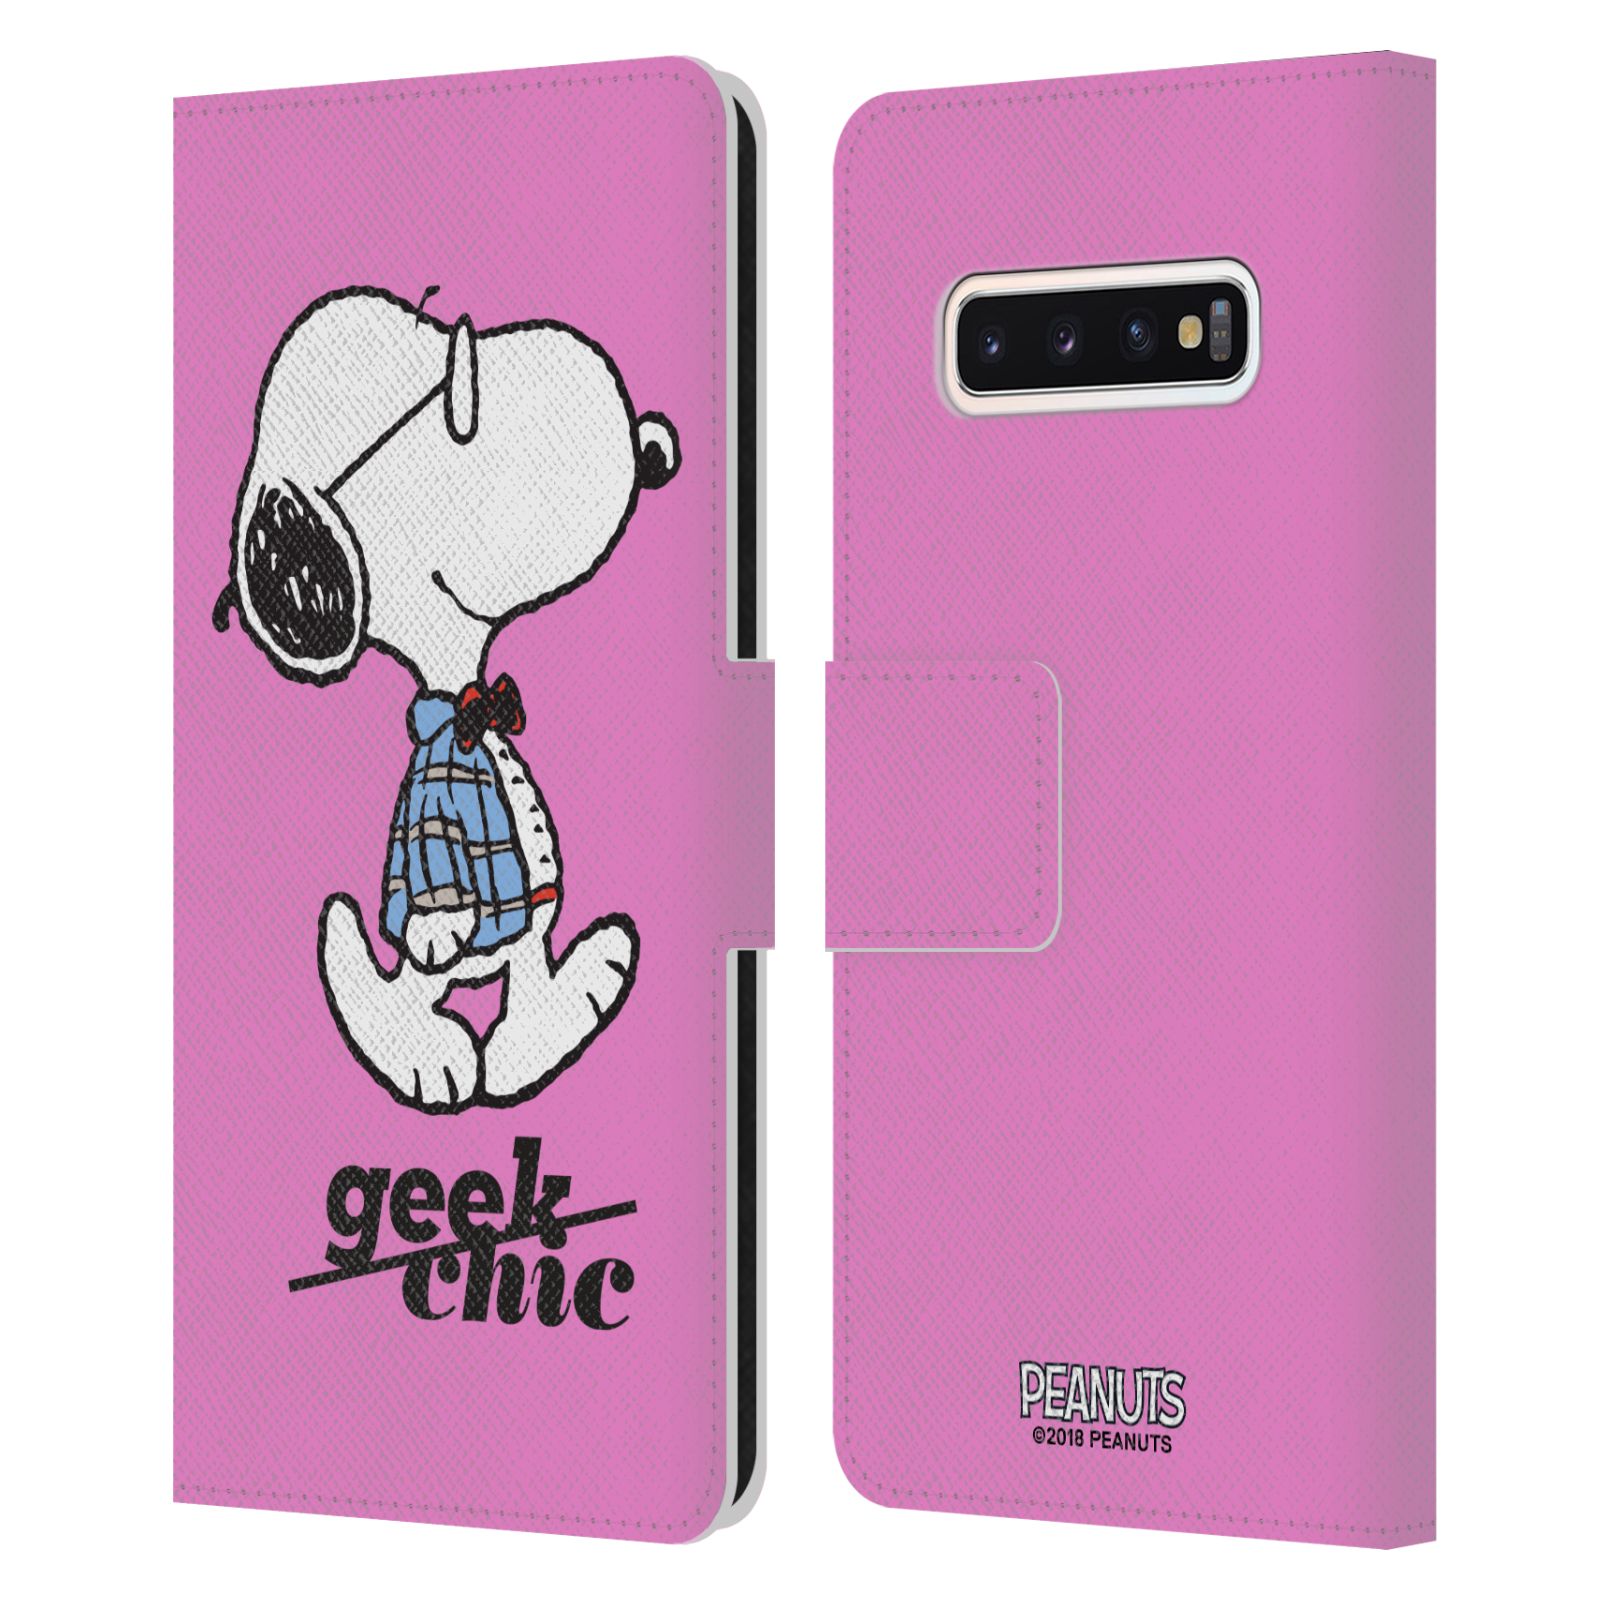 Pouzdro na mobil Samsung Galaxy S10 - Head Case - Peanuts - růžový pejsek snoopy nerd